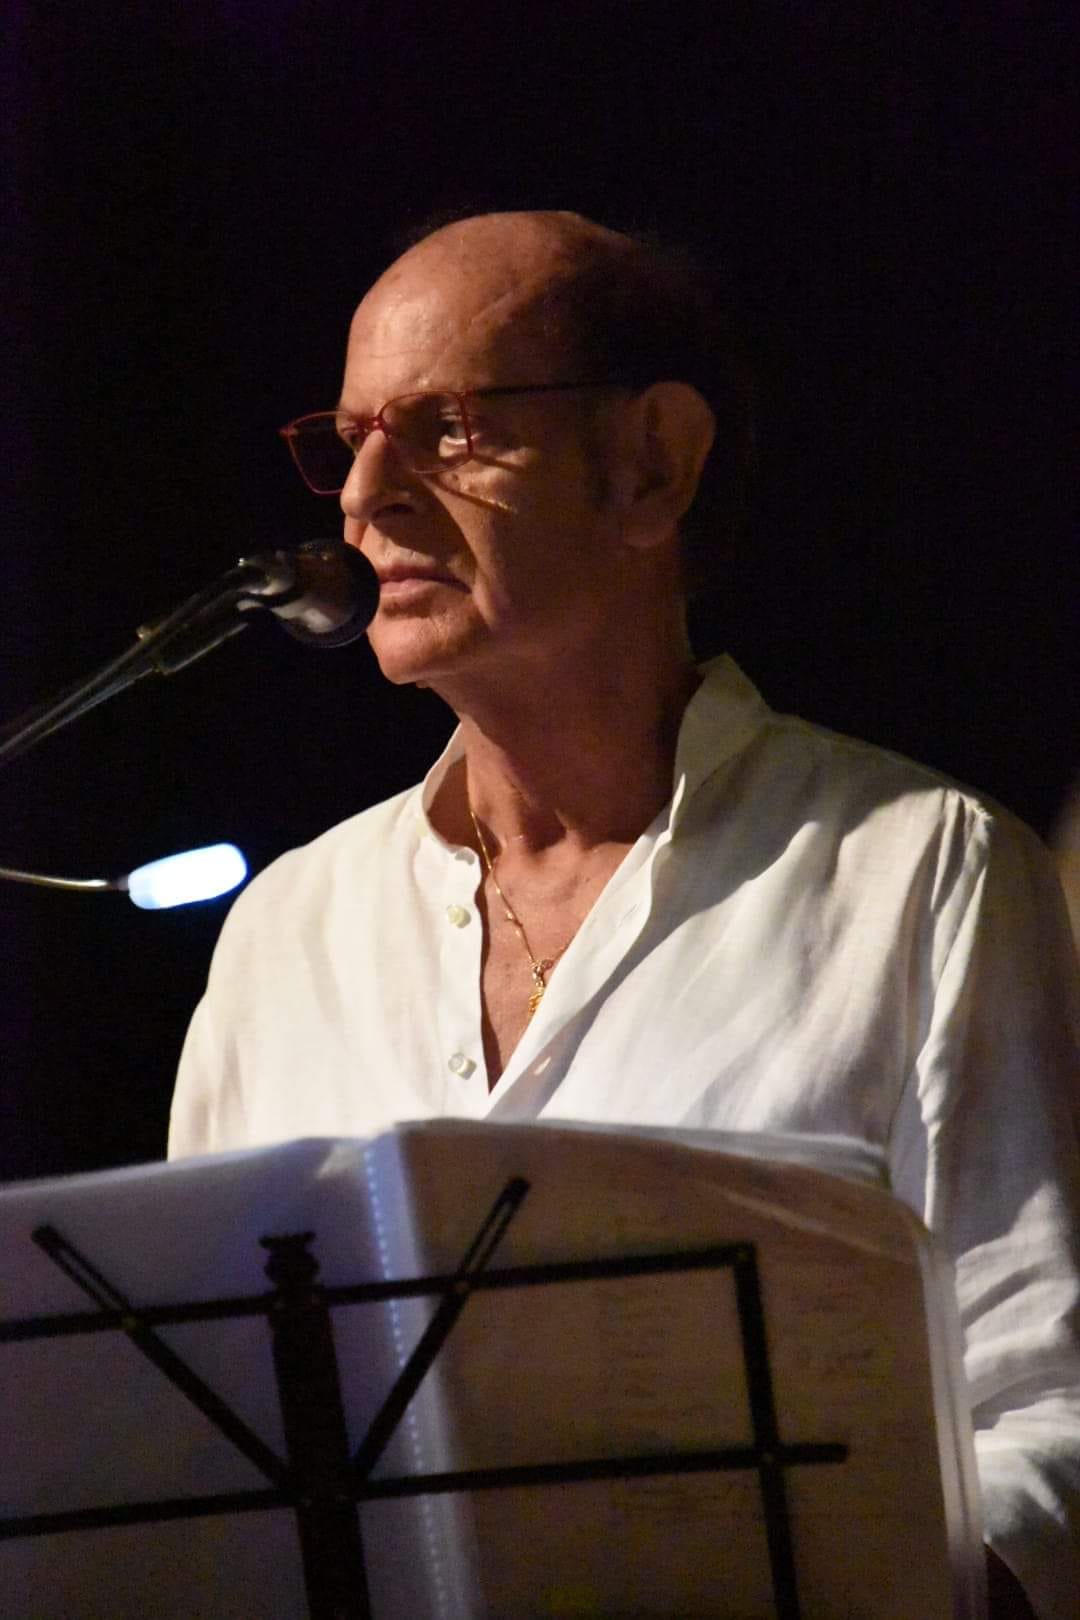  La Poesia Onesta premia il poeta Abruzzese Marcello Marciani "Acrobata delle Parole"